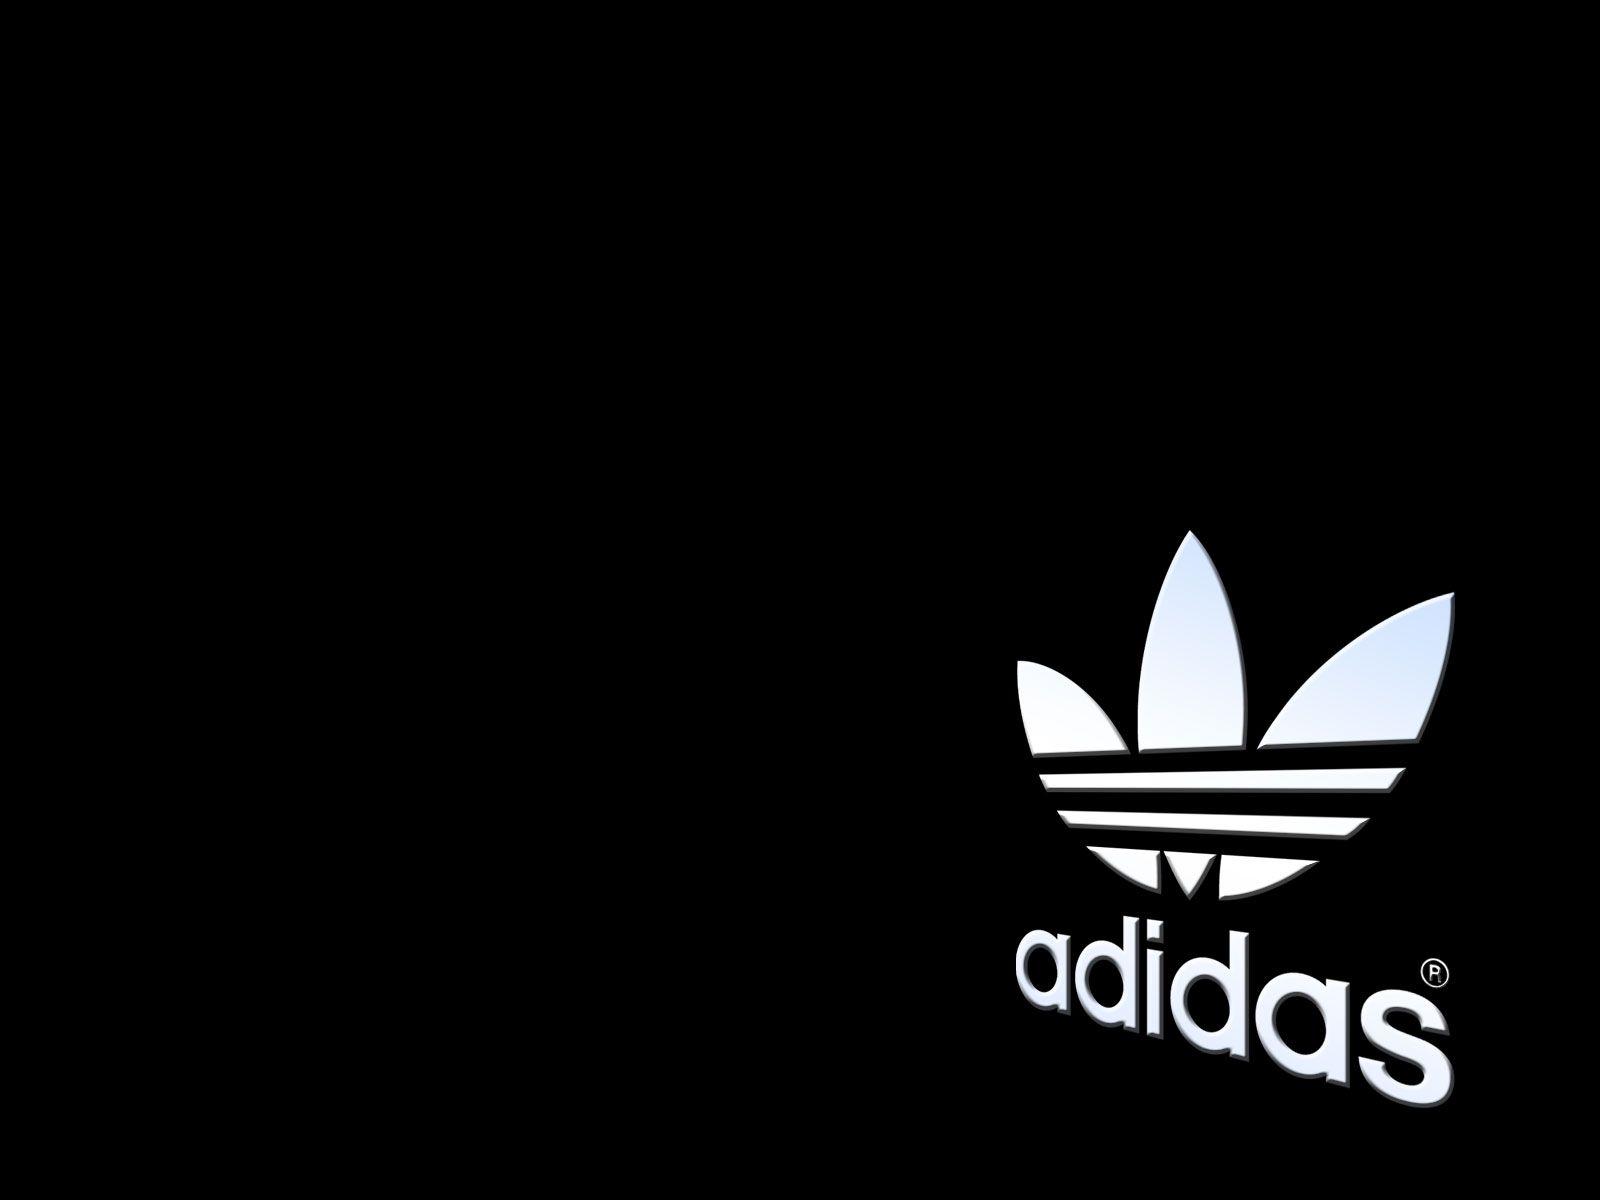 Adidas Soccer Logo - Adidas Soccer Wallpaper